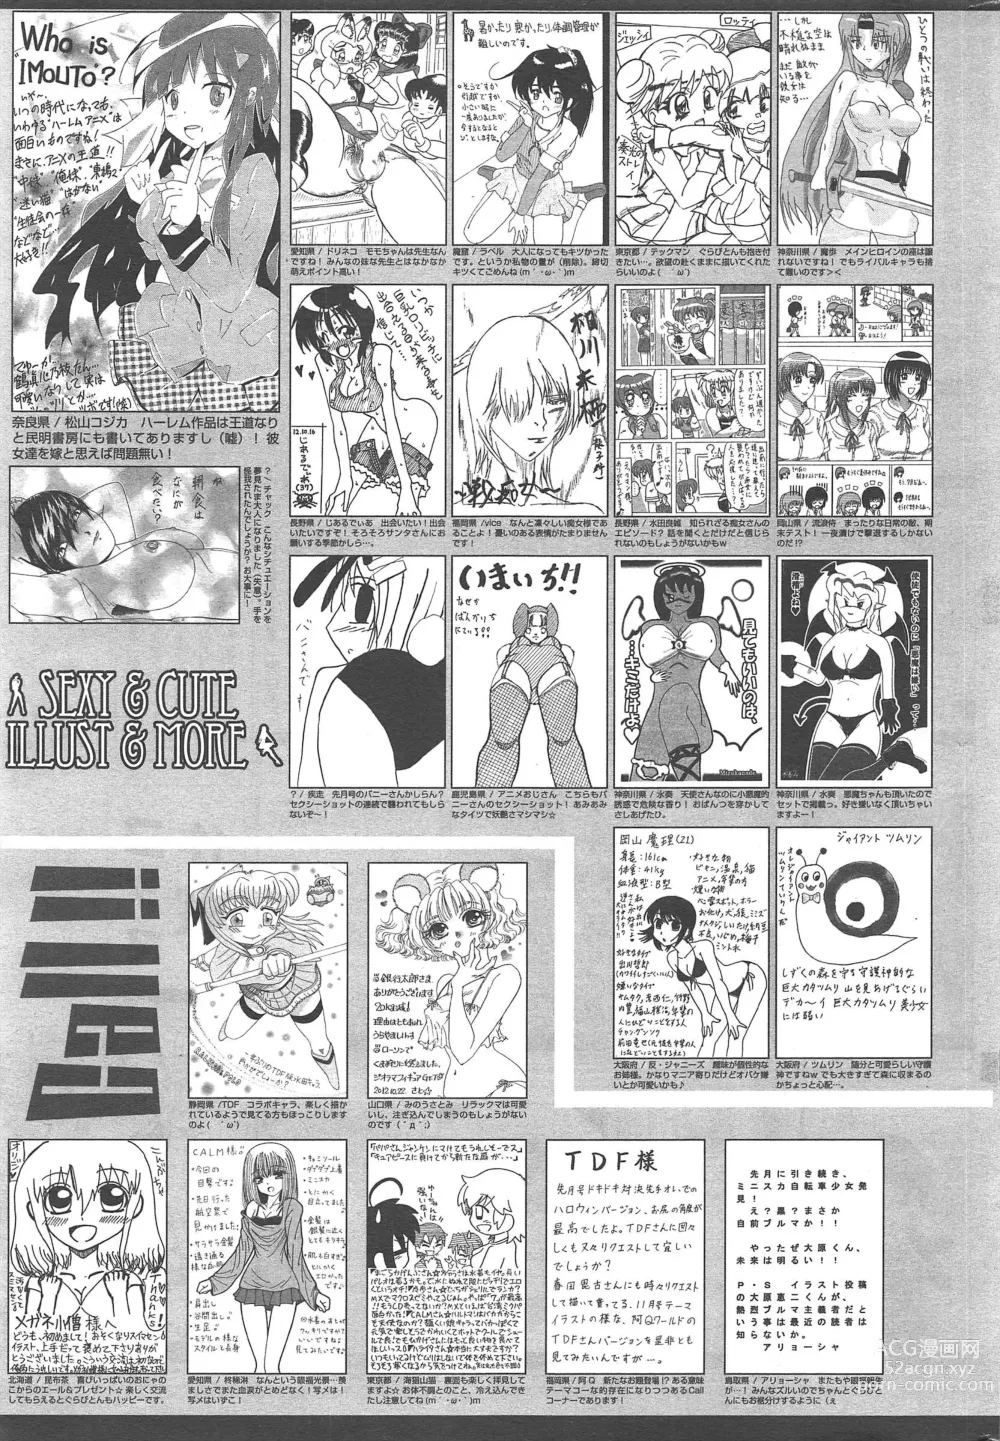 Page 317 of manga Manga Bangaichi 2013-01